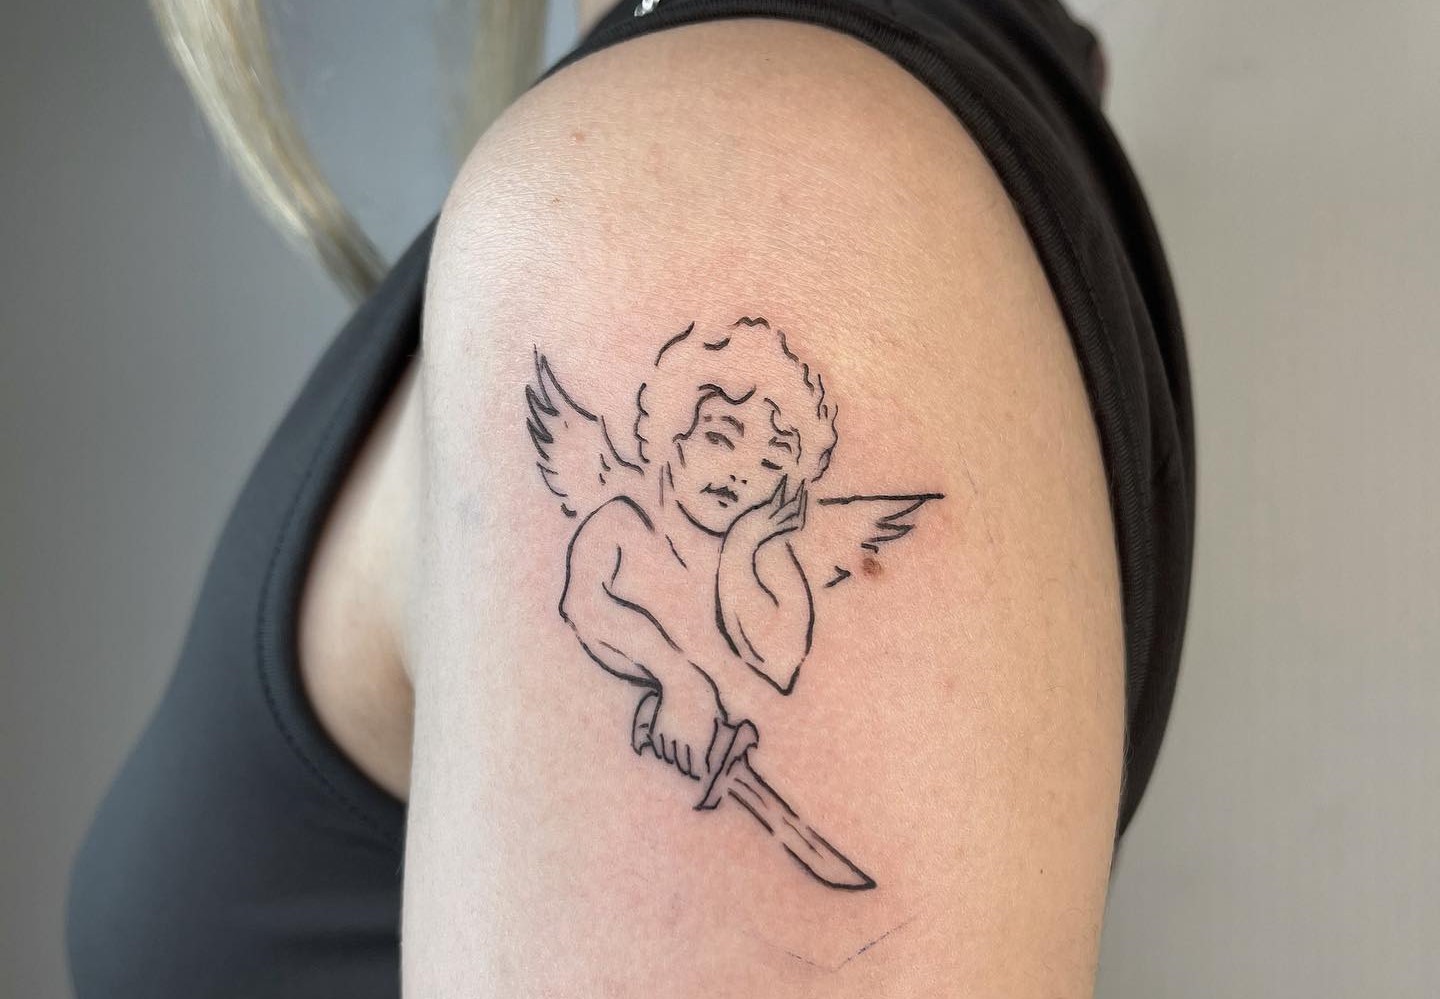 Geometric Gaurdian Angel Tattoo hawktattooofficial selectcitywalk     angeltattoo tattoo angel ink tattoos tattooartist  Instagram